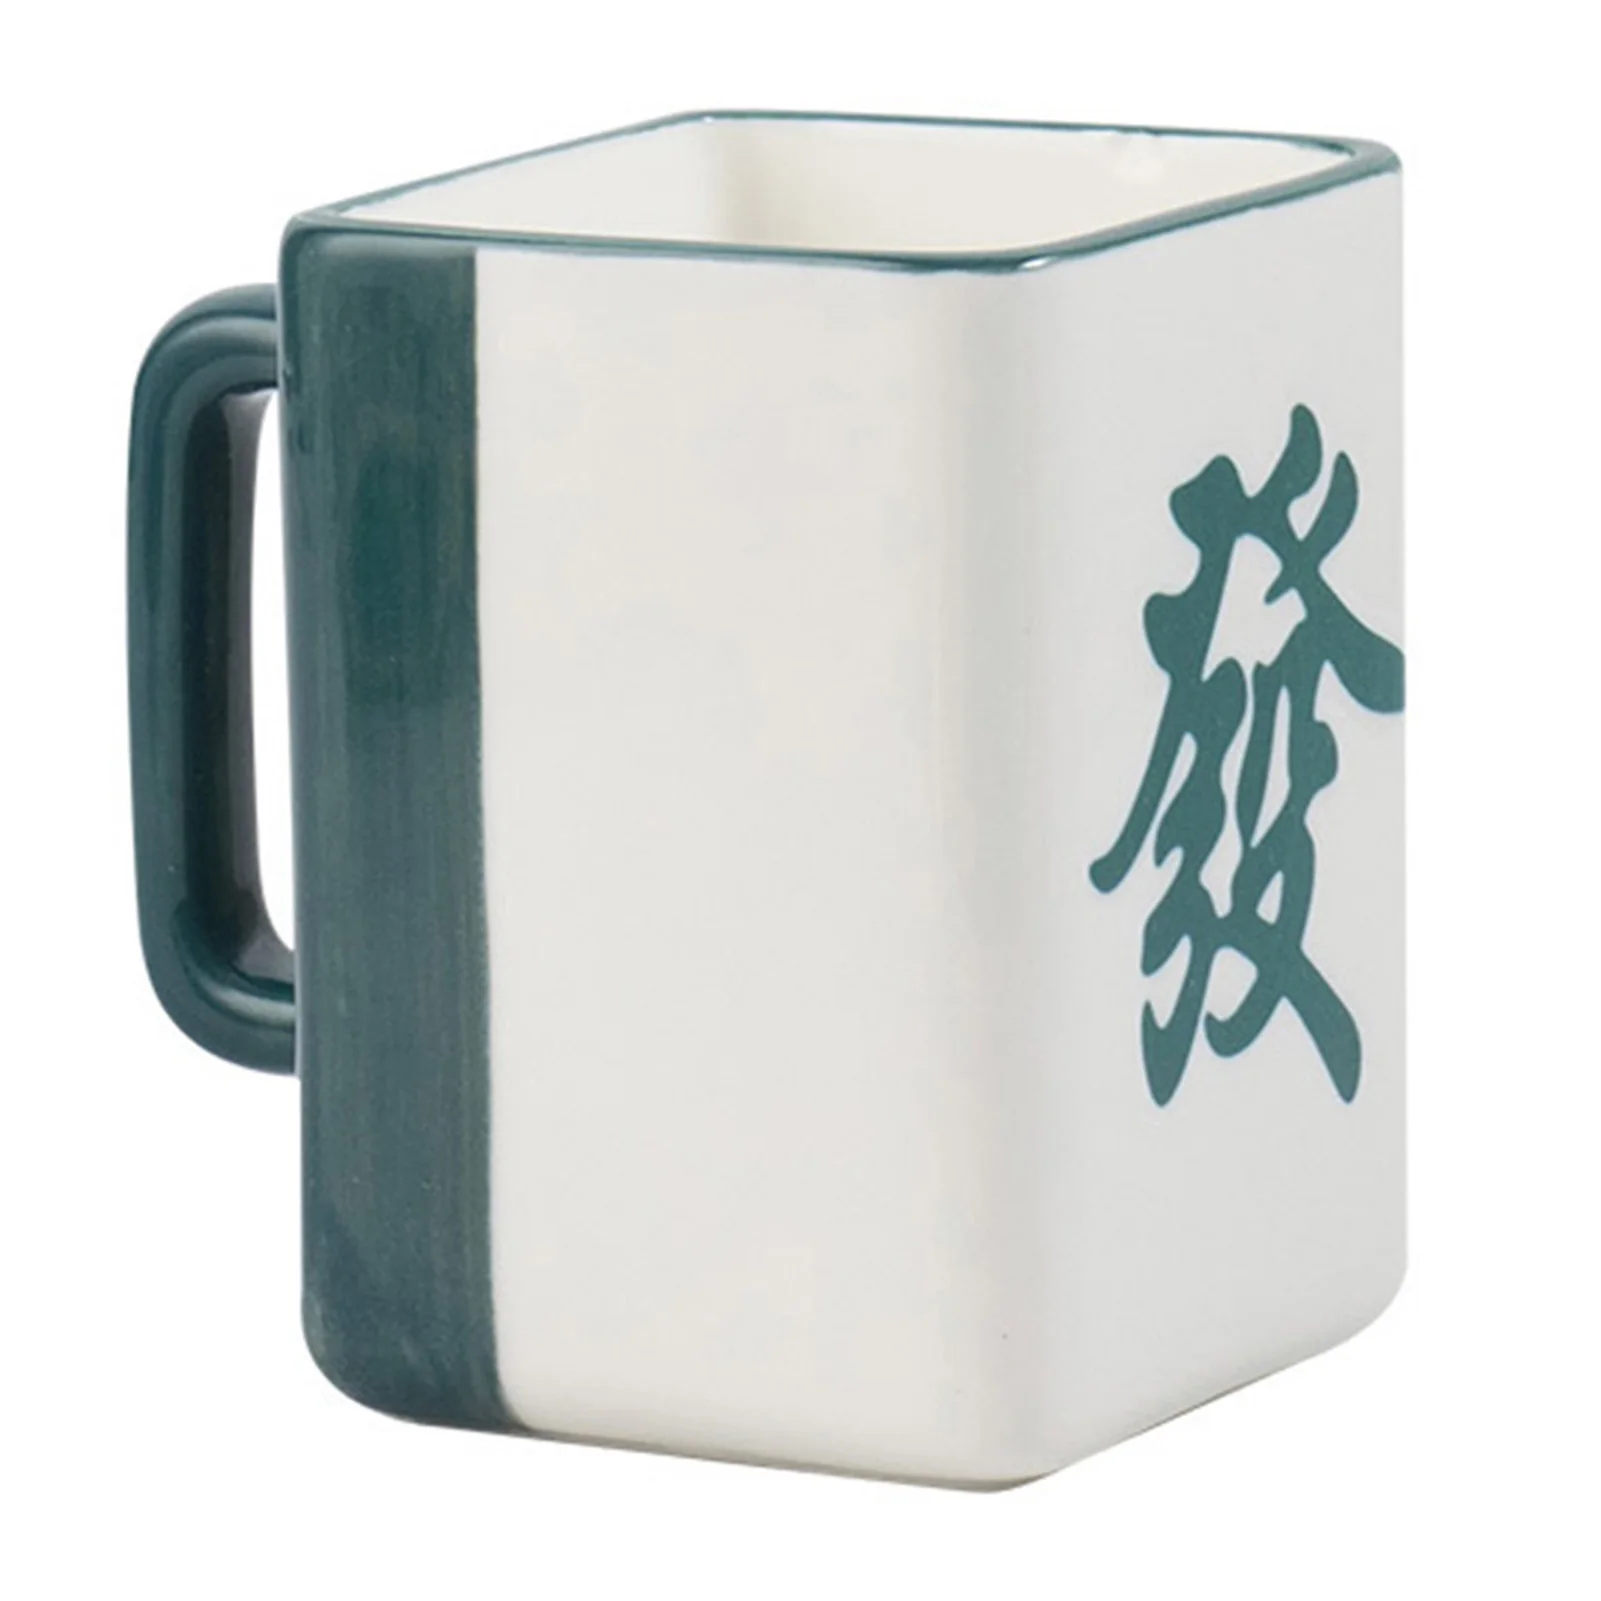 

Керамическая чайная кружка, кружка для эспрессо, керамическая кружка в китайском стиле, керамическая чашка для чая, напитков, чая, кофе